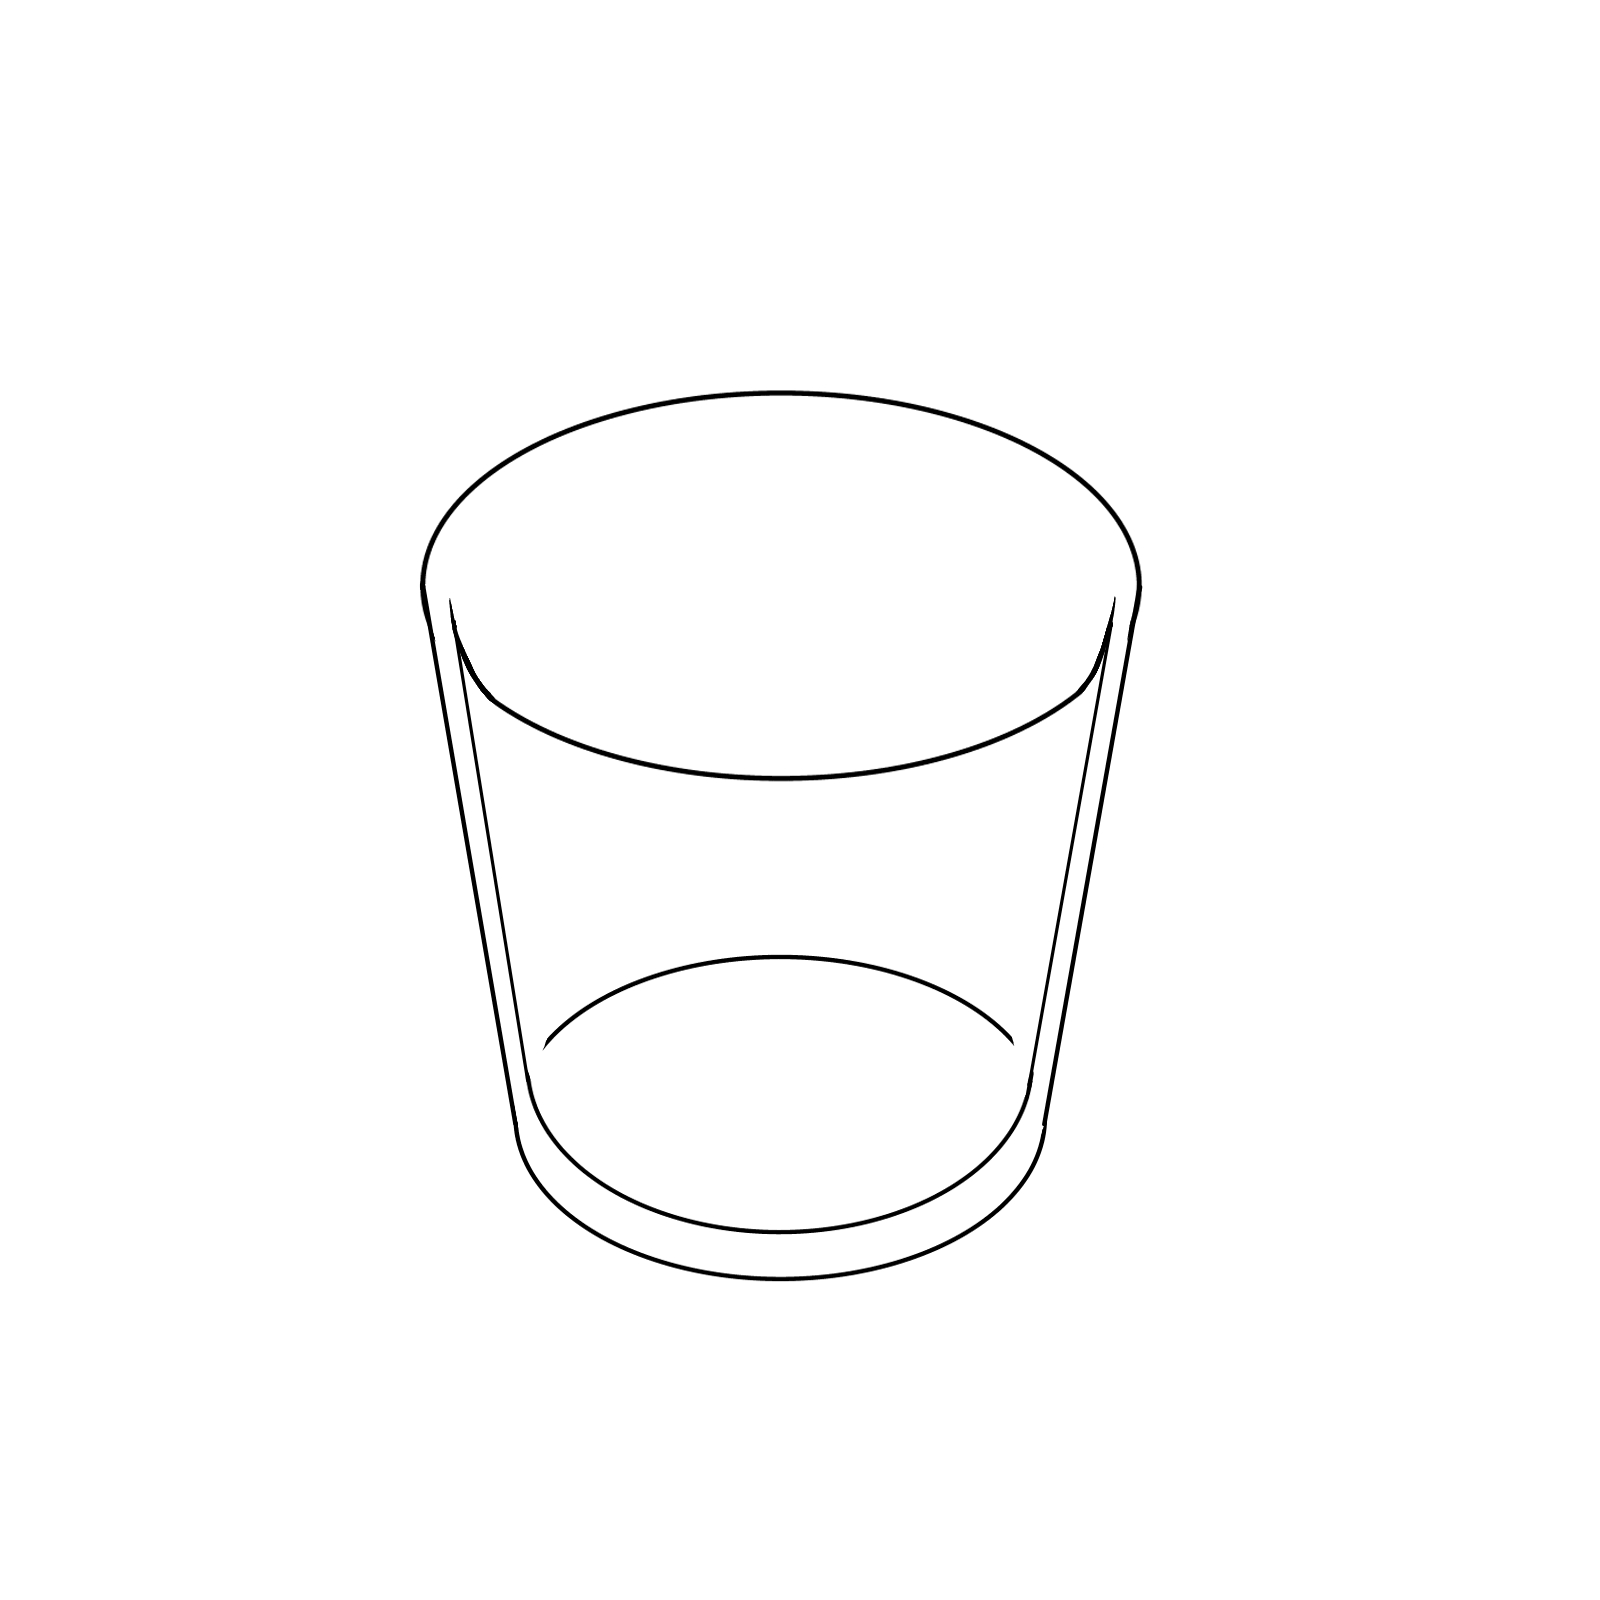 [基础] 盛满水的玻璃杯怎么画 